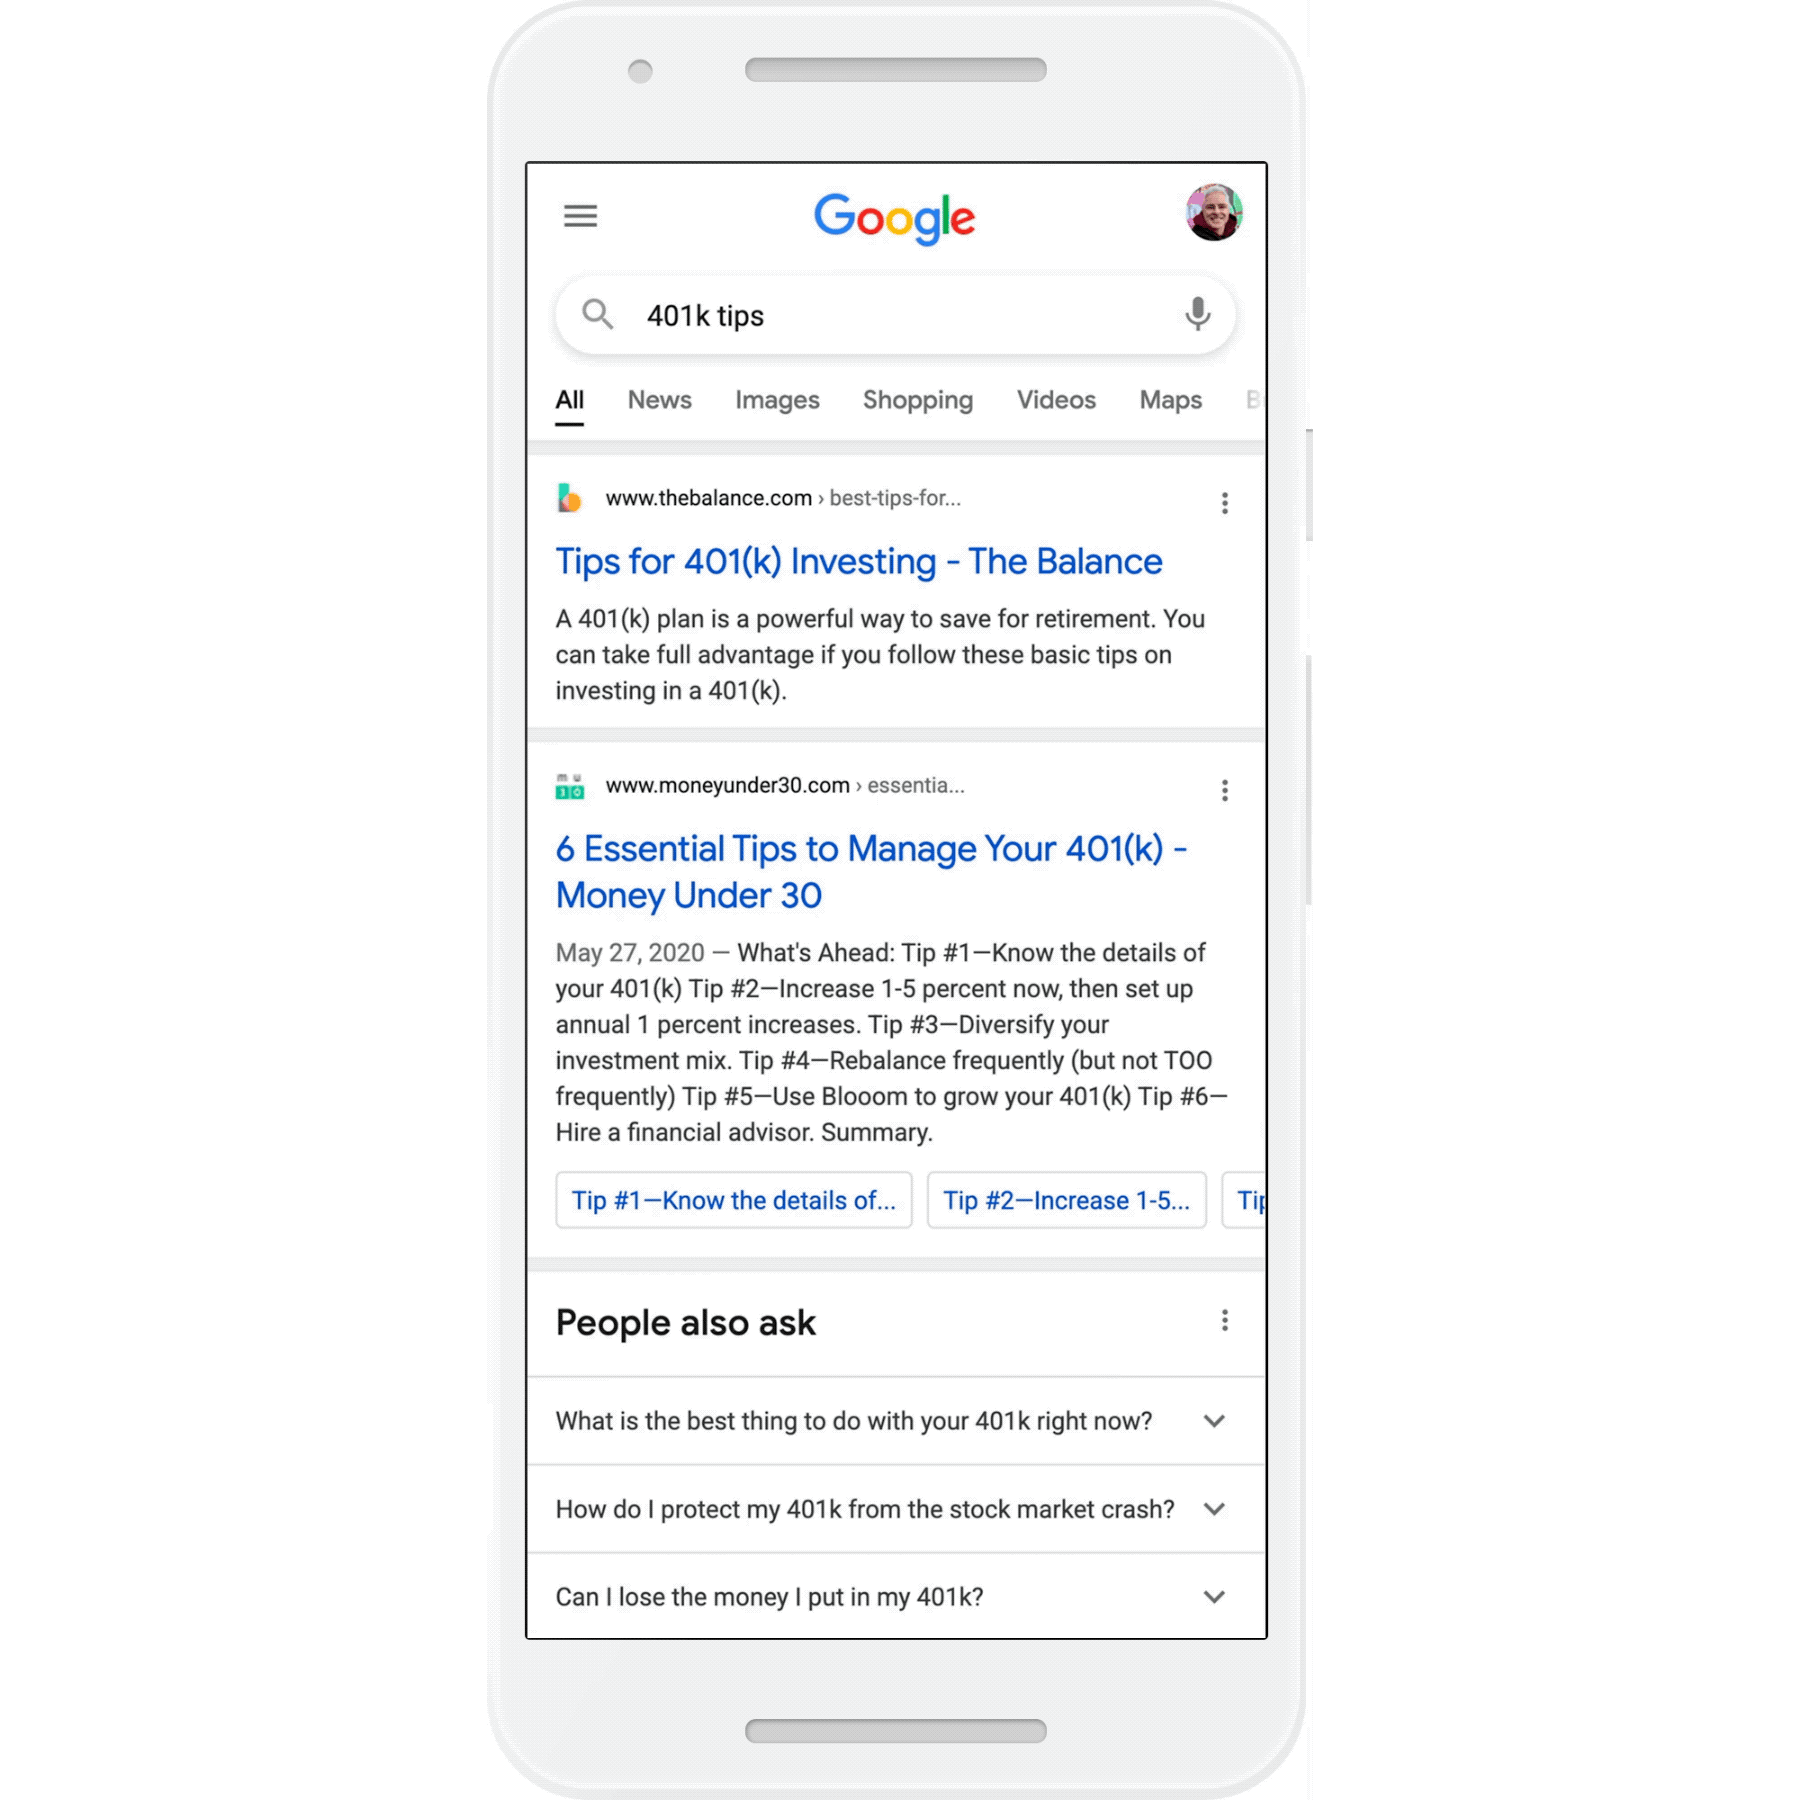 جوجل تختبر ميزة عرض تفاصيل المواقع على محرك البحث قبل الدخول عليها